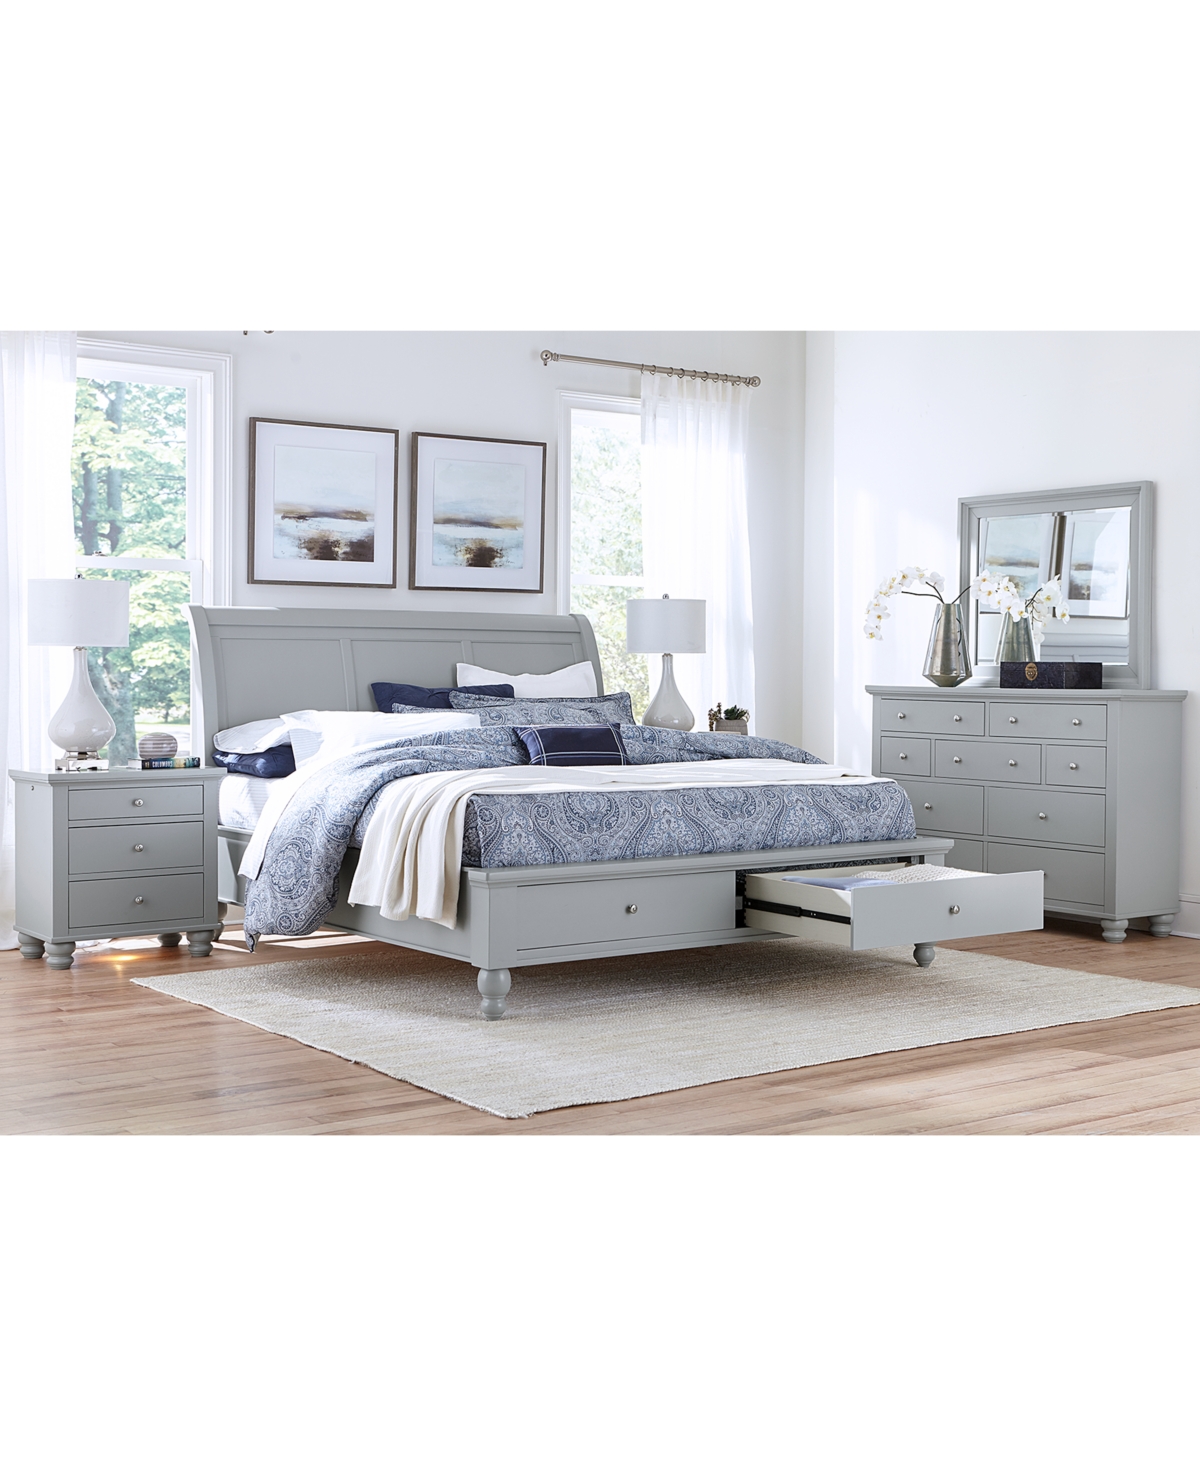 Aspenhome Cambridge Queen Sleigh Storage Bed 3pc Set (bed + Dresser + Nightstand) In Grey